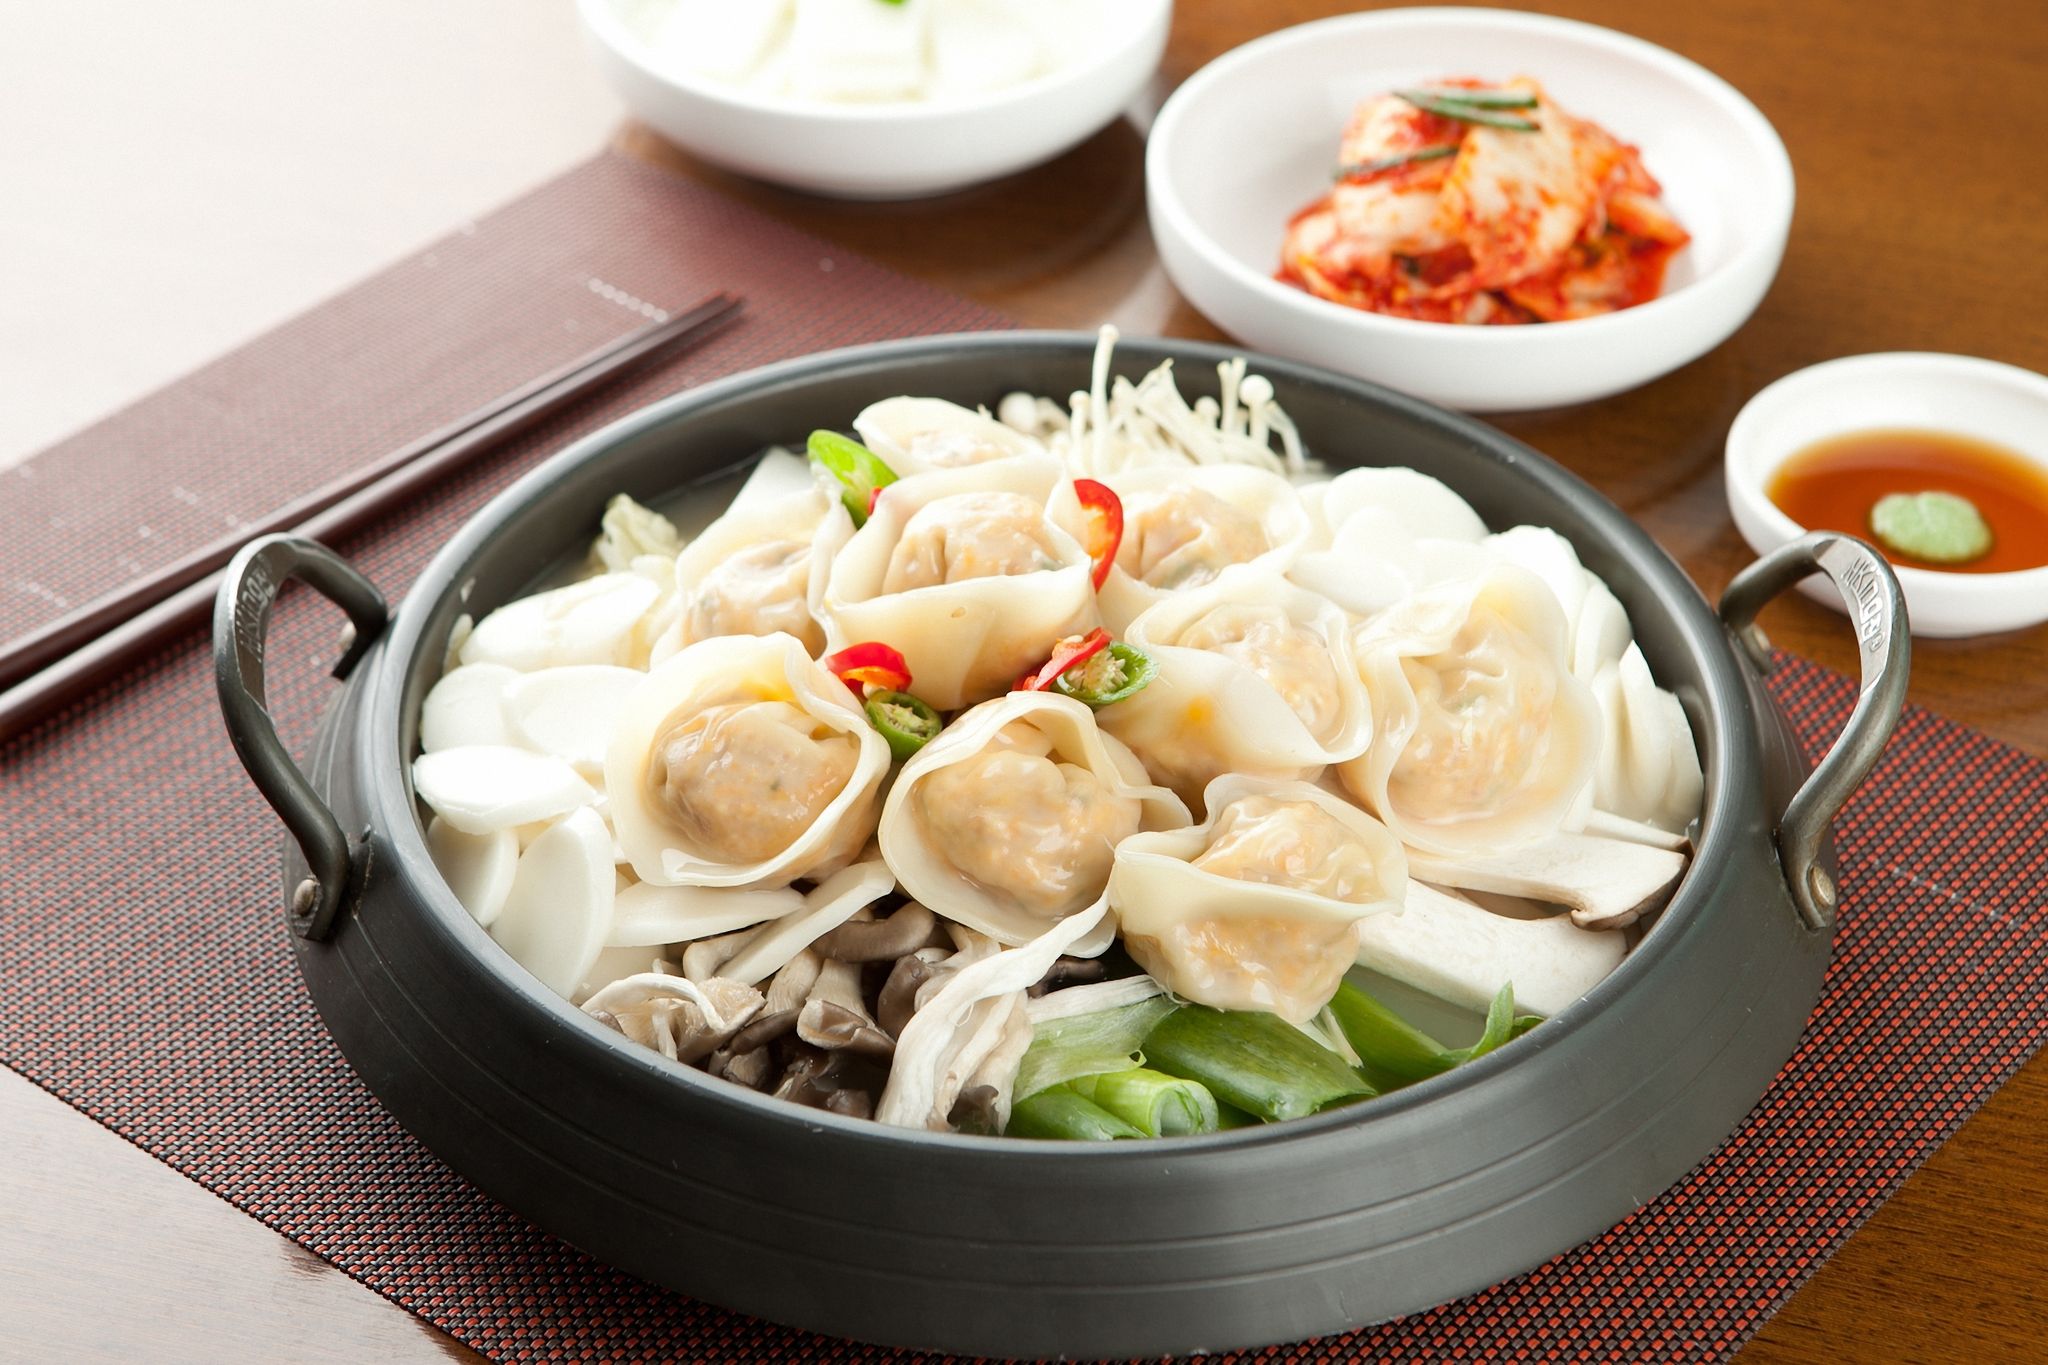 What are the ingredients in mandu – the dumplings?